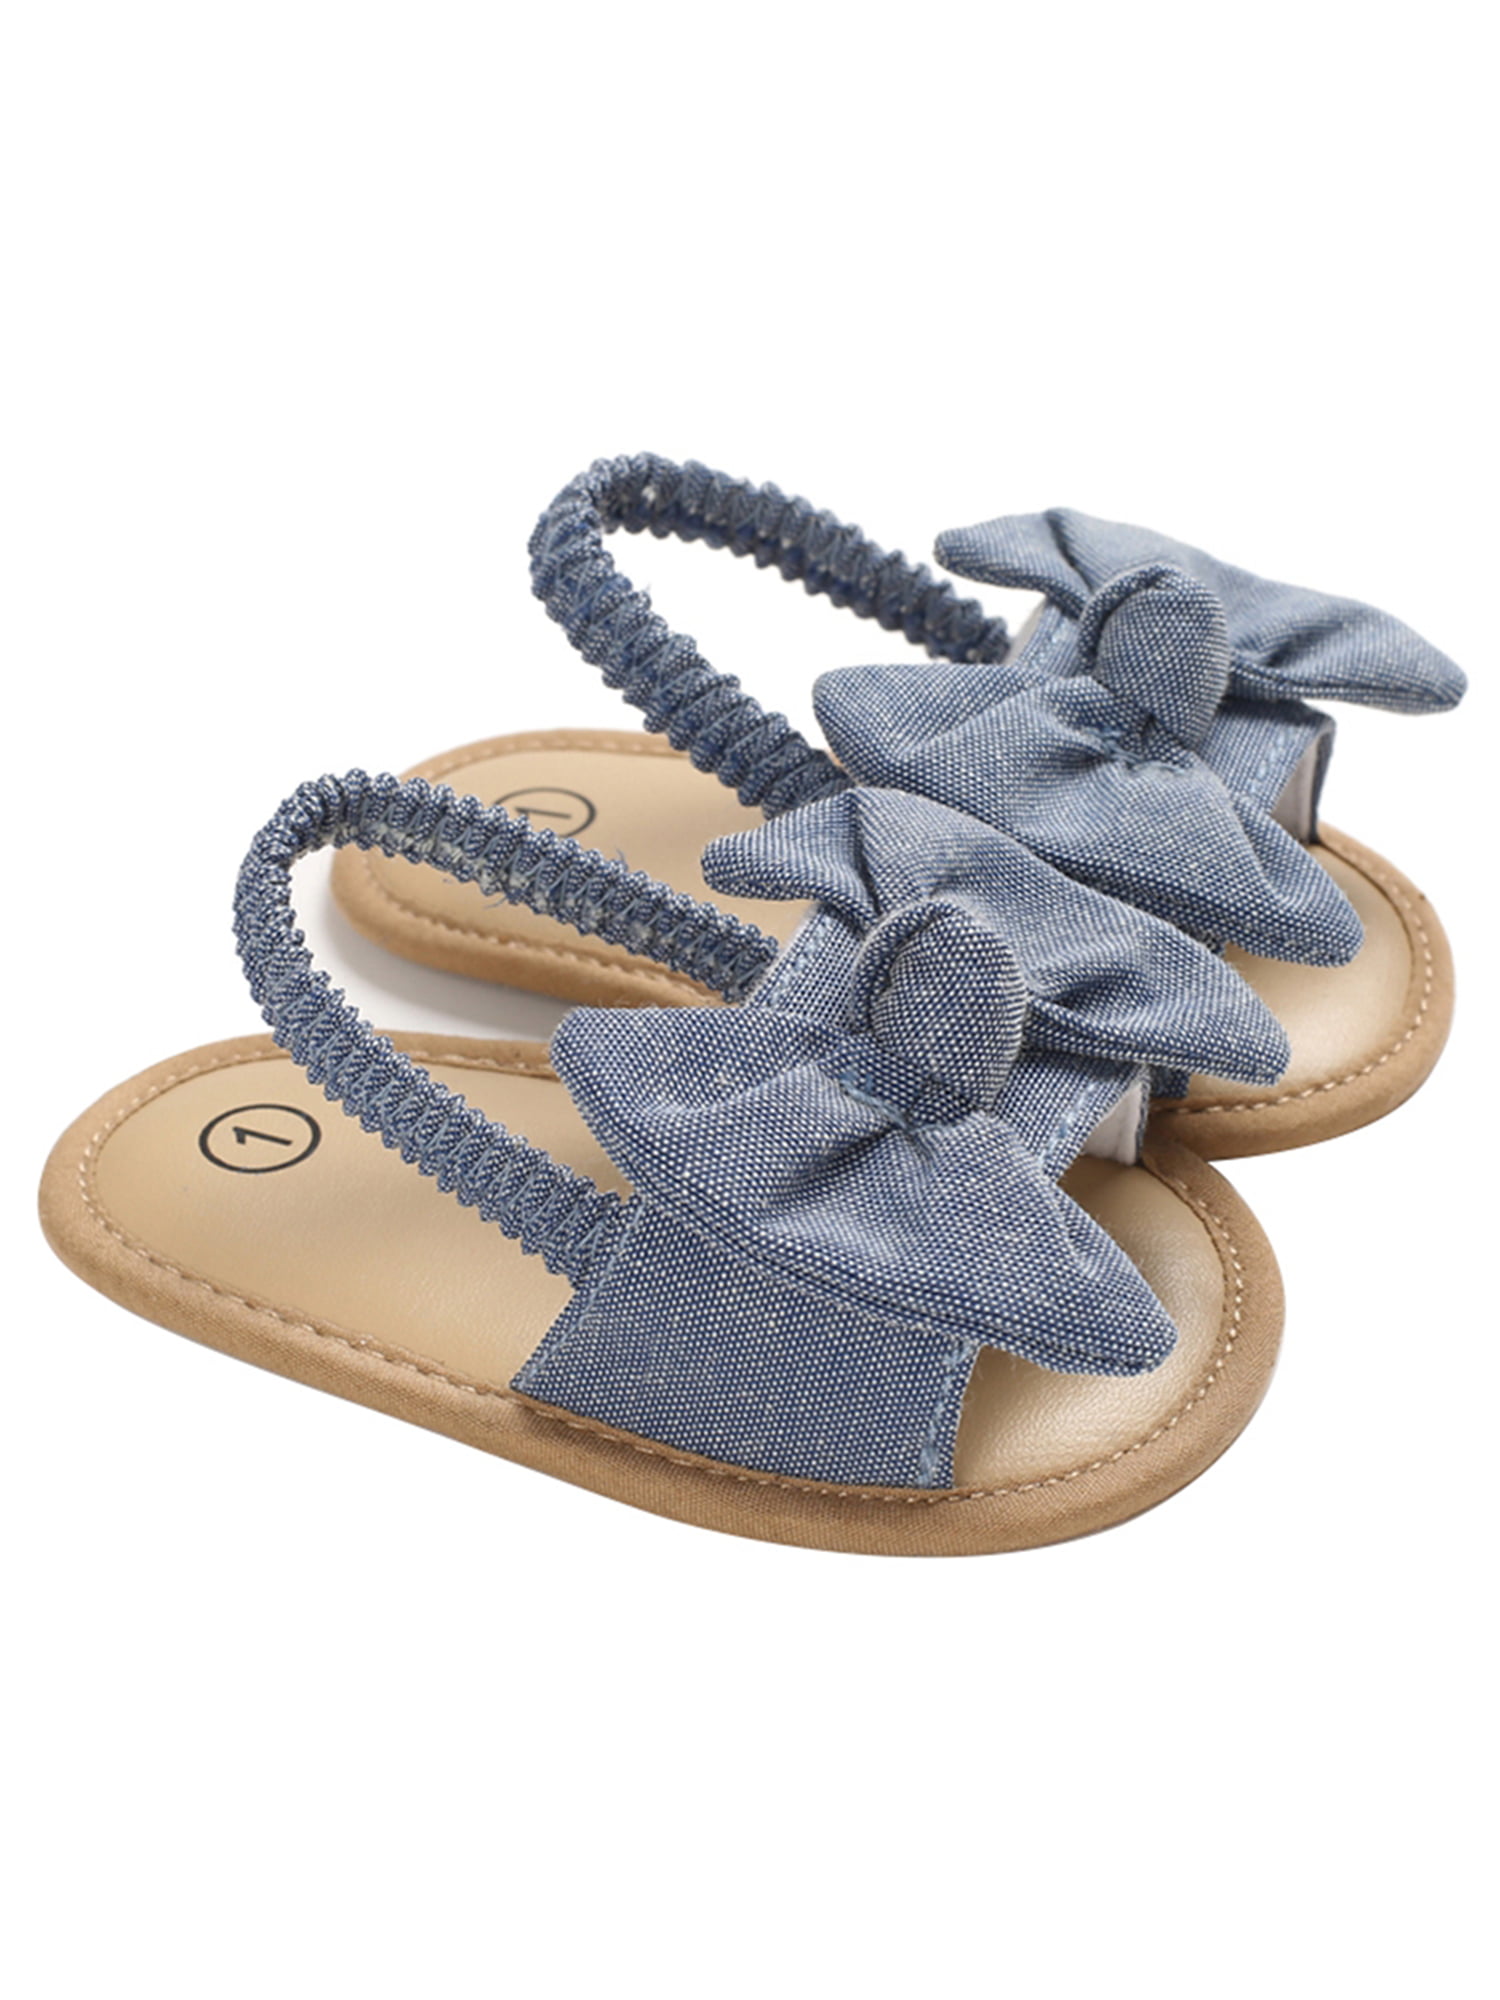 infant beach shoes